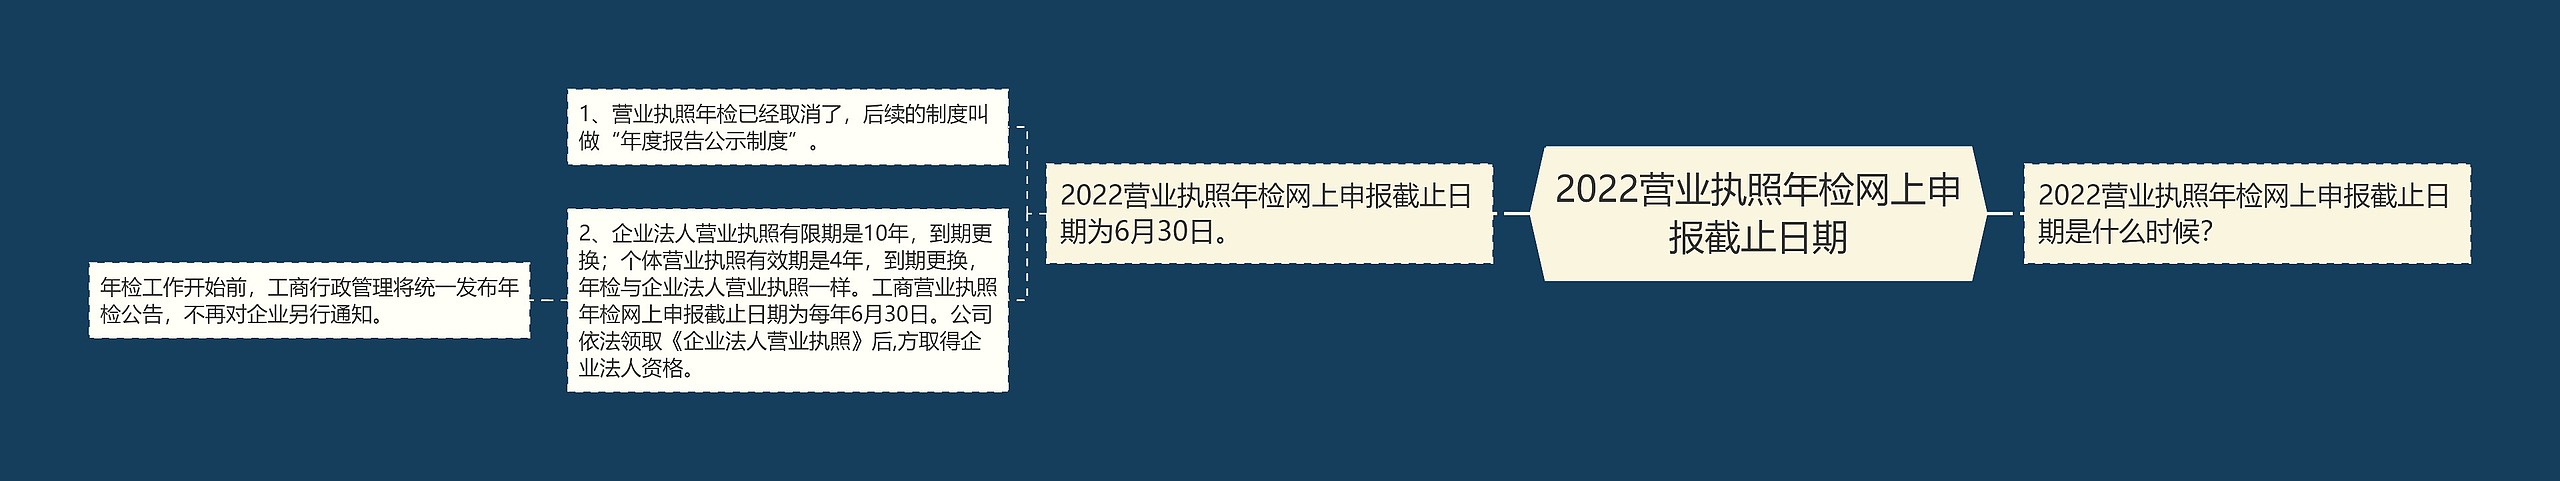 2022营业执照年检网上申报截止日期